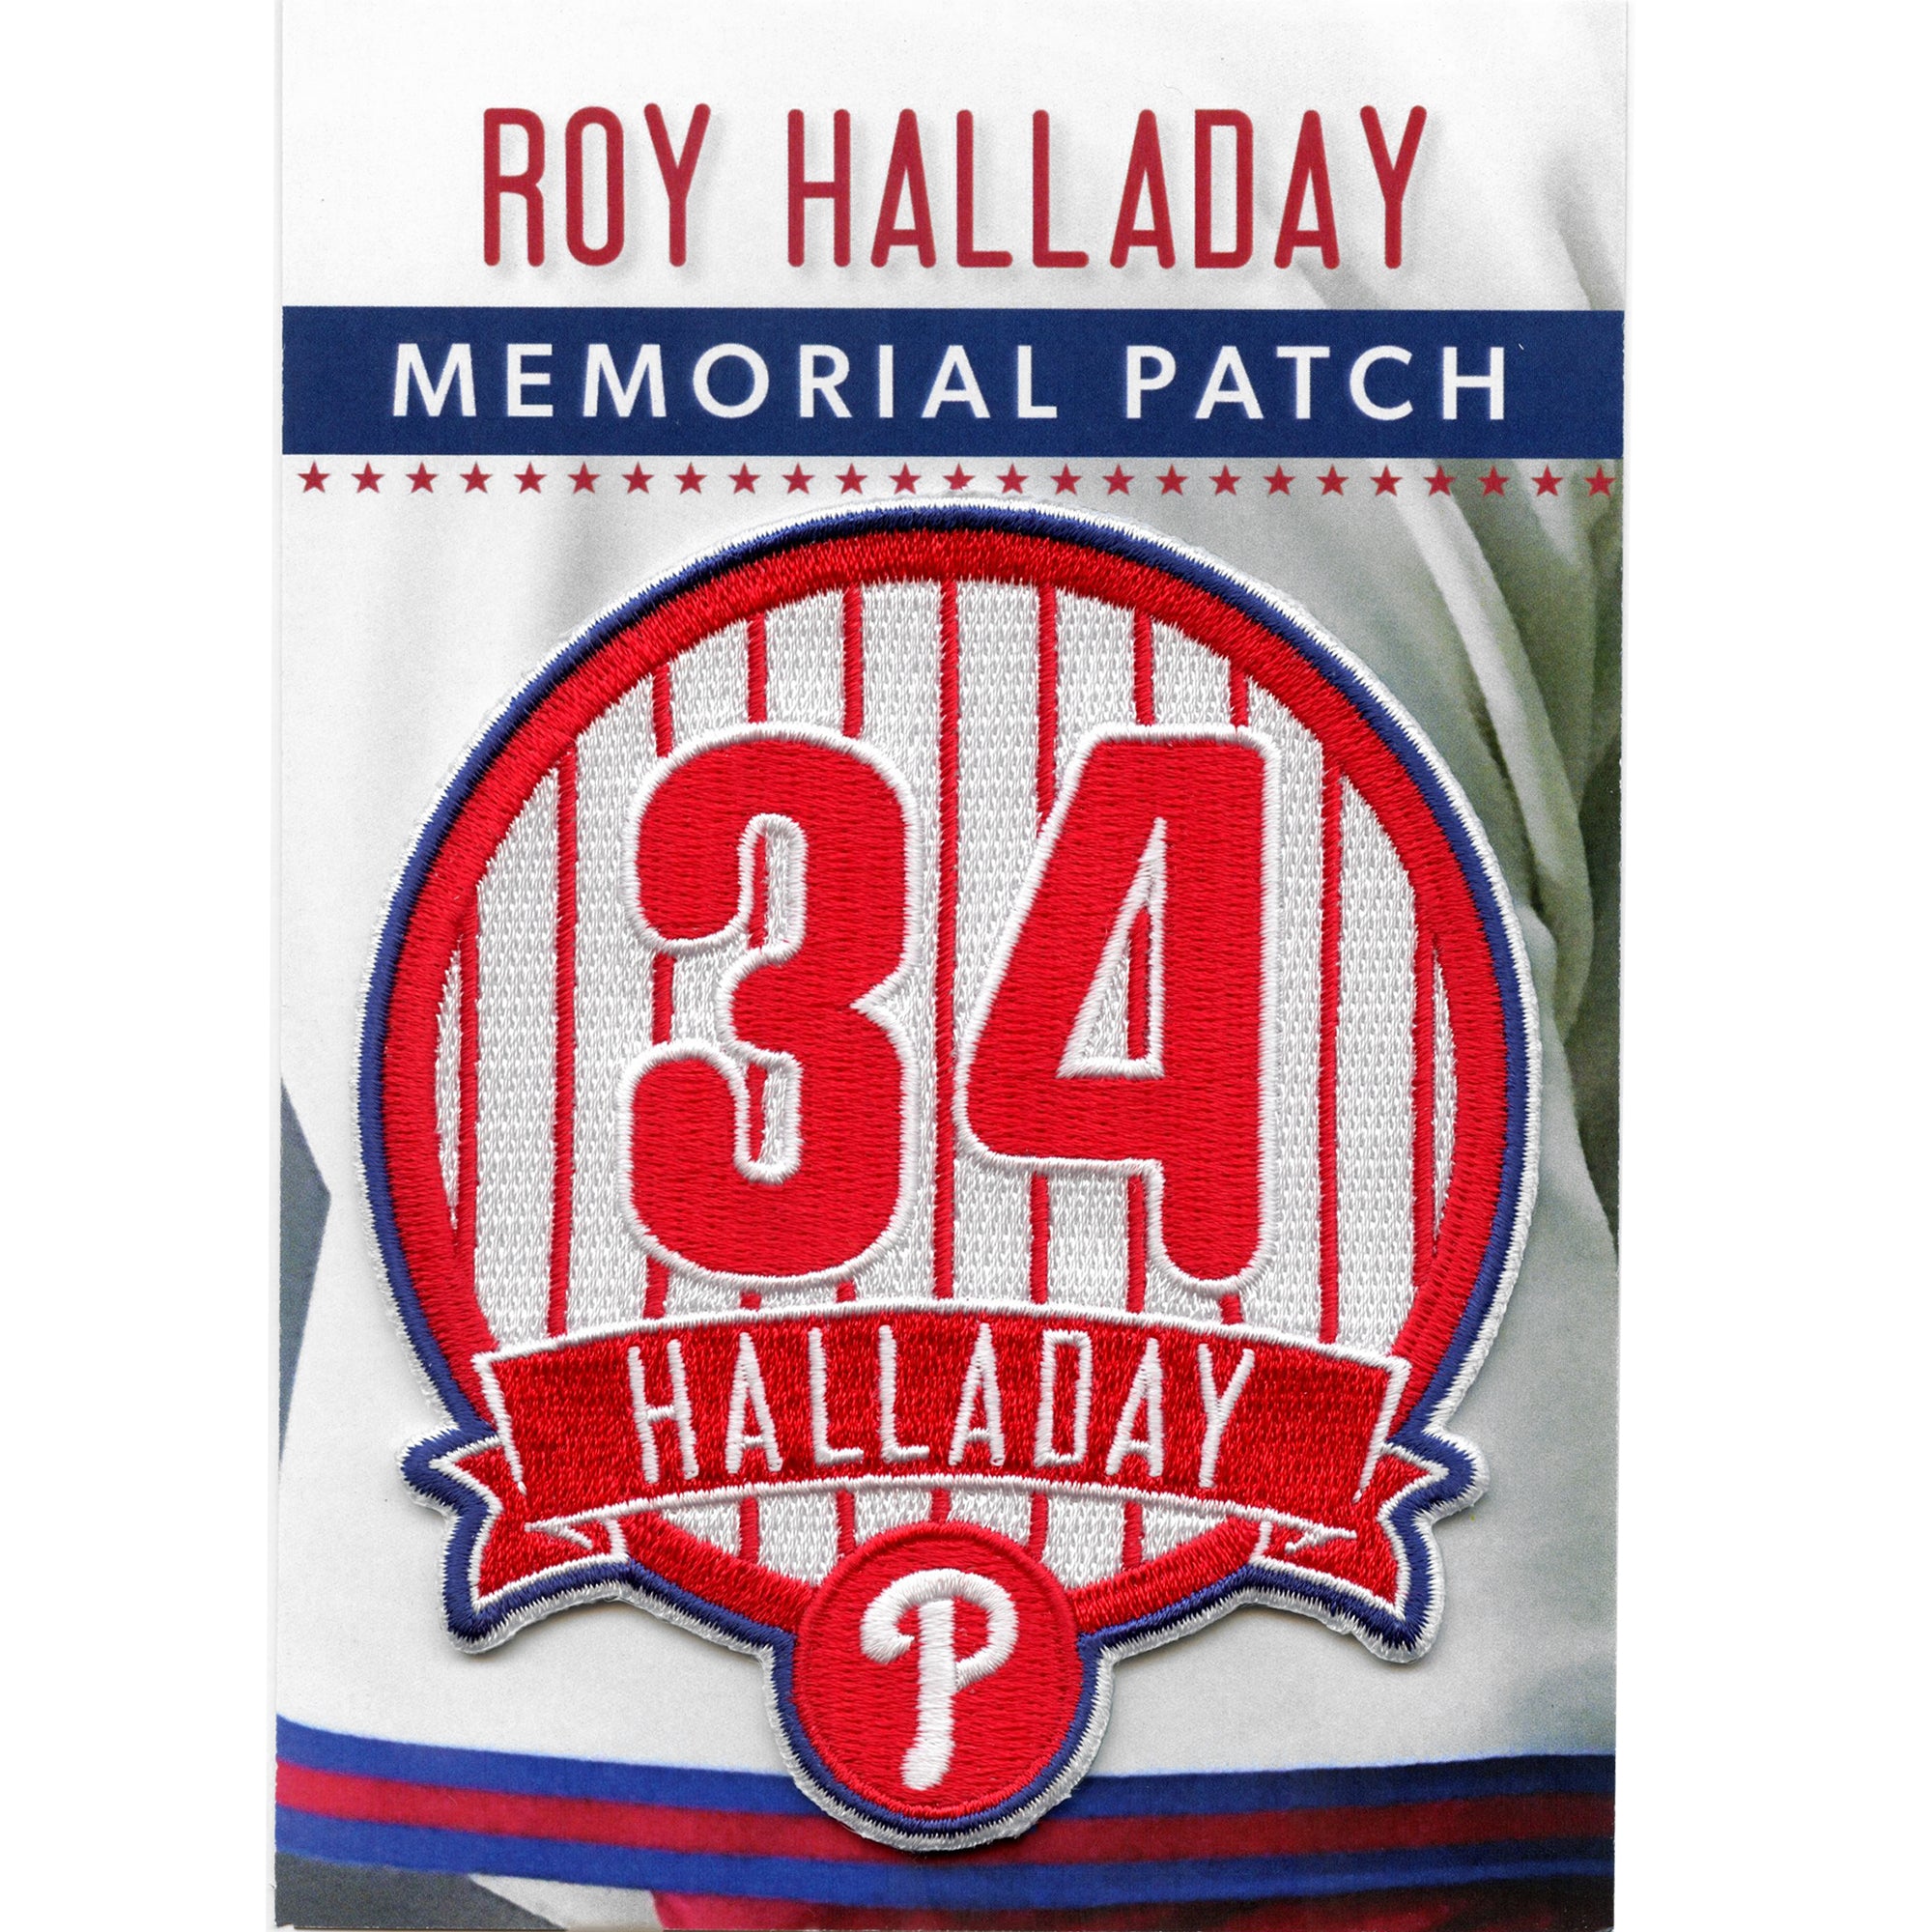 Roy Halladay Memorial Service